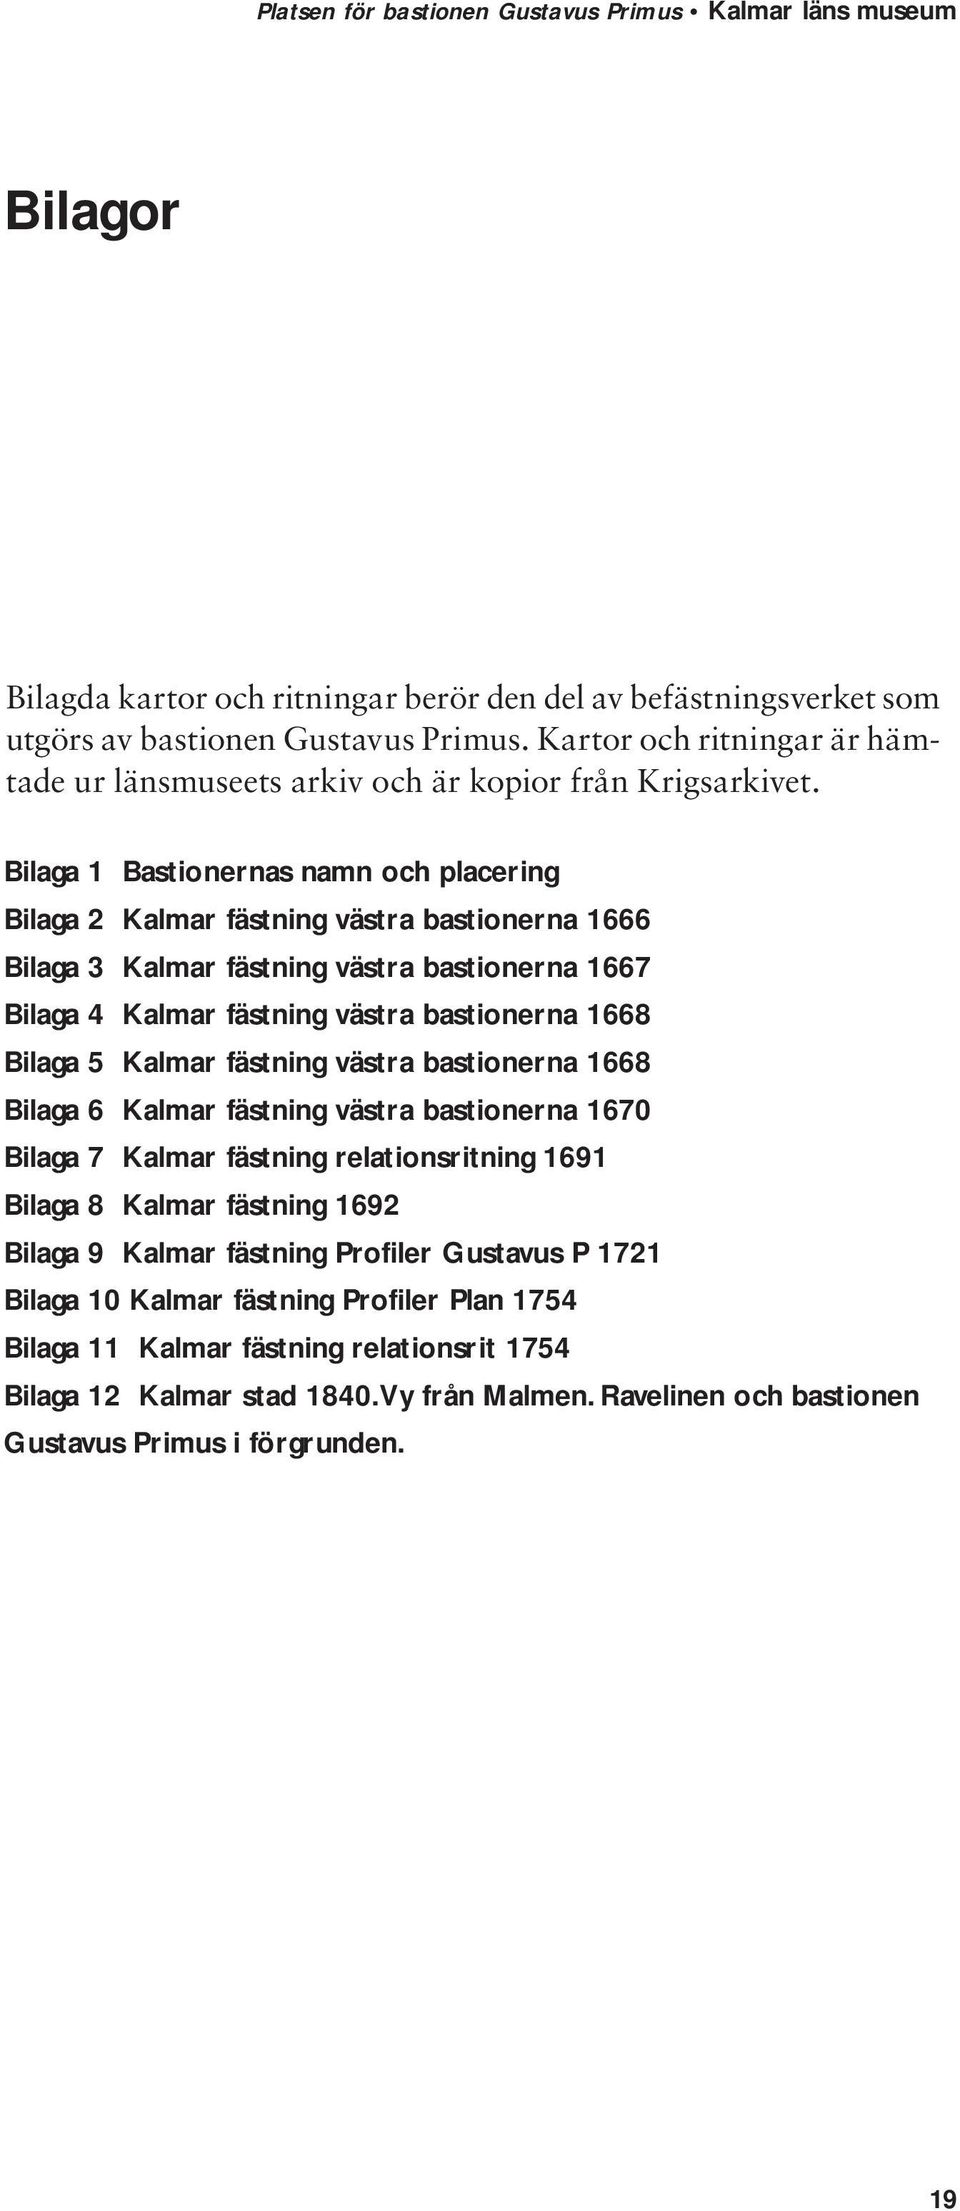 Kalmar fästning västra bastionerna 1668 Bilaga 6 Kalmar fästning västra bastionerna 1670 Bilaga 7 Kalmar fästning relationsritning 1691 Bilaga 8 Kalmar fästning 1692 Bilaga 9 Kalmar fästning Profiler